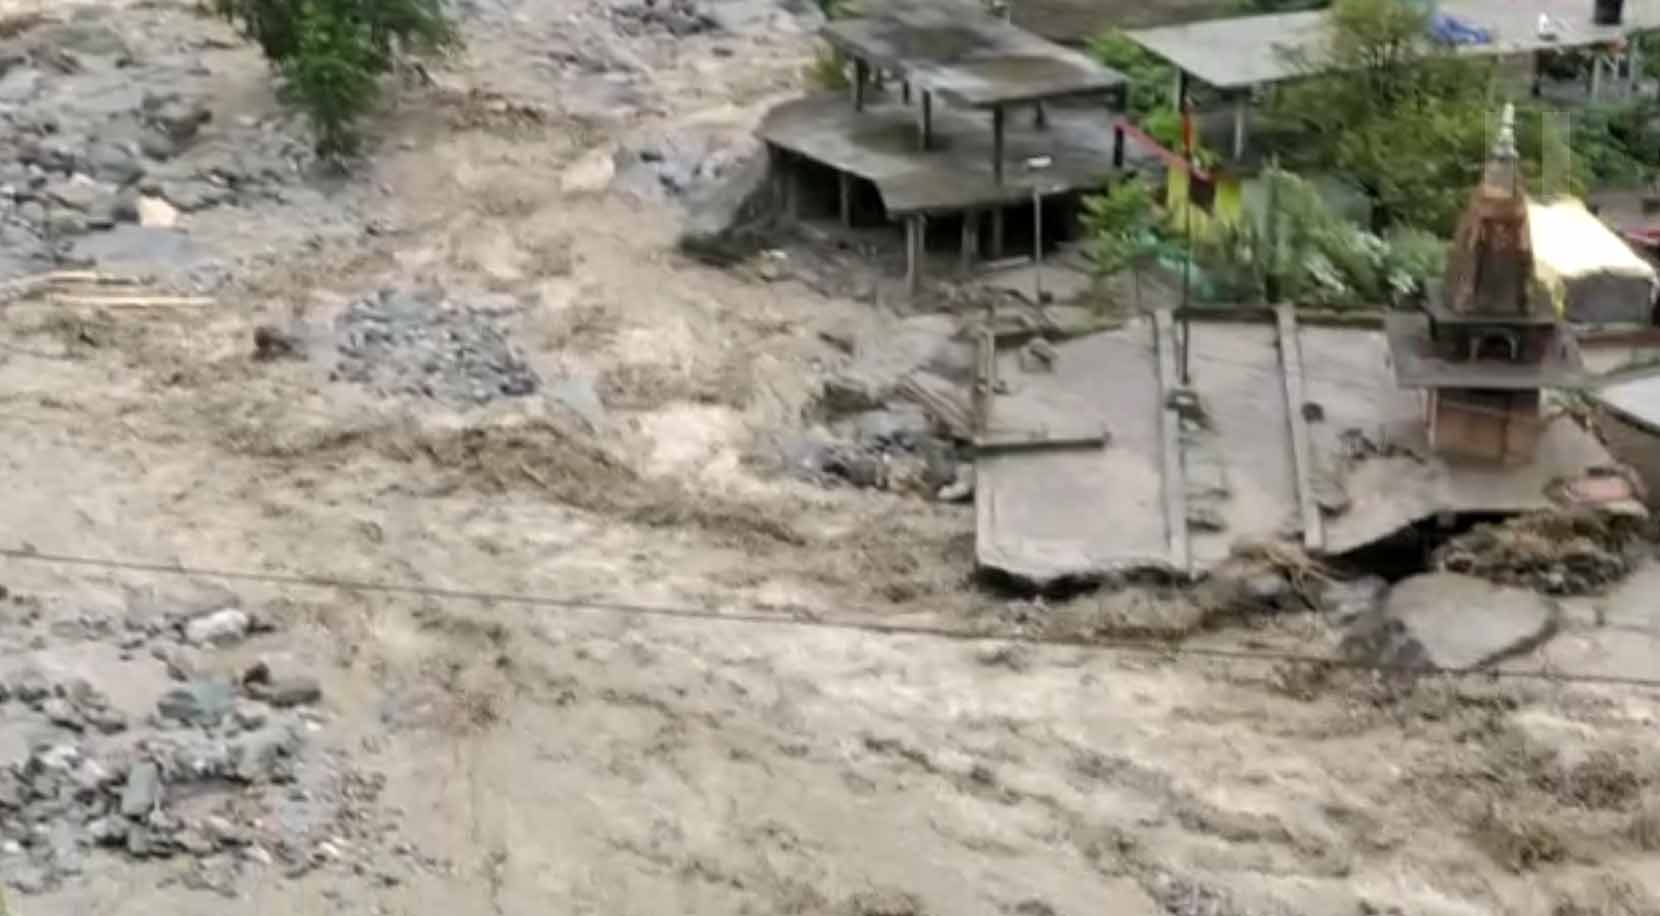 तोजिंग नाले में भारी बाढ़ से दस लोग लापता, तलाश में जुटा प्रशासन